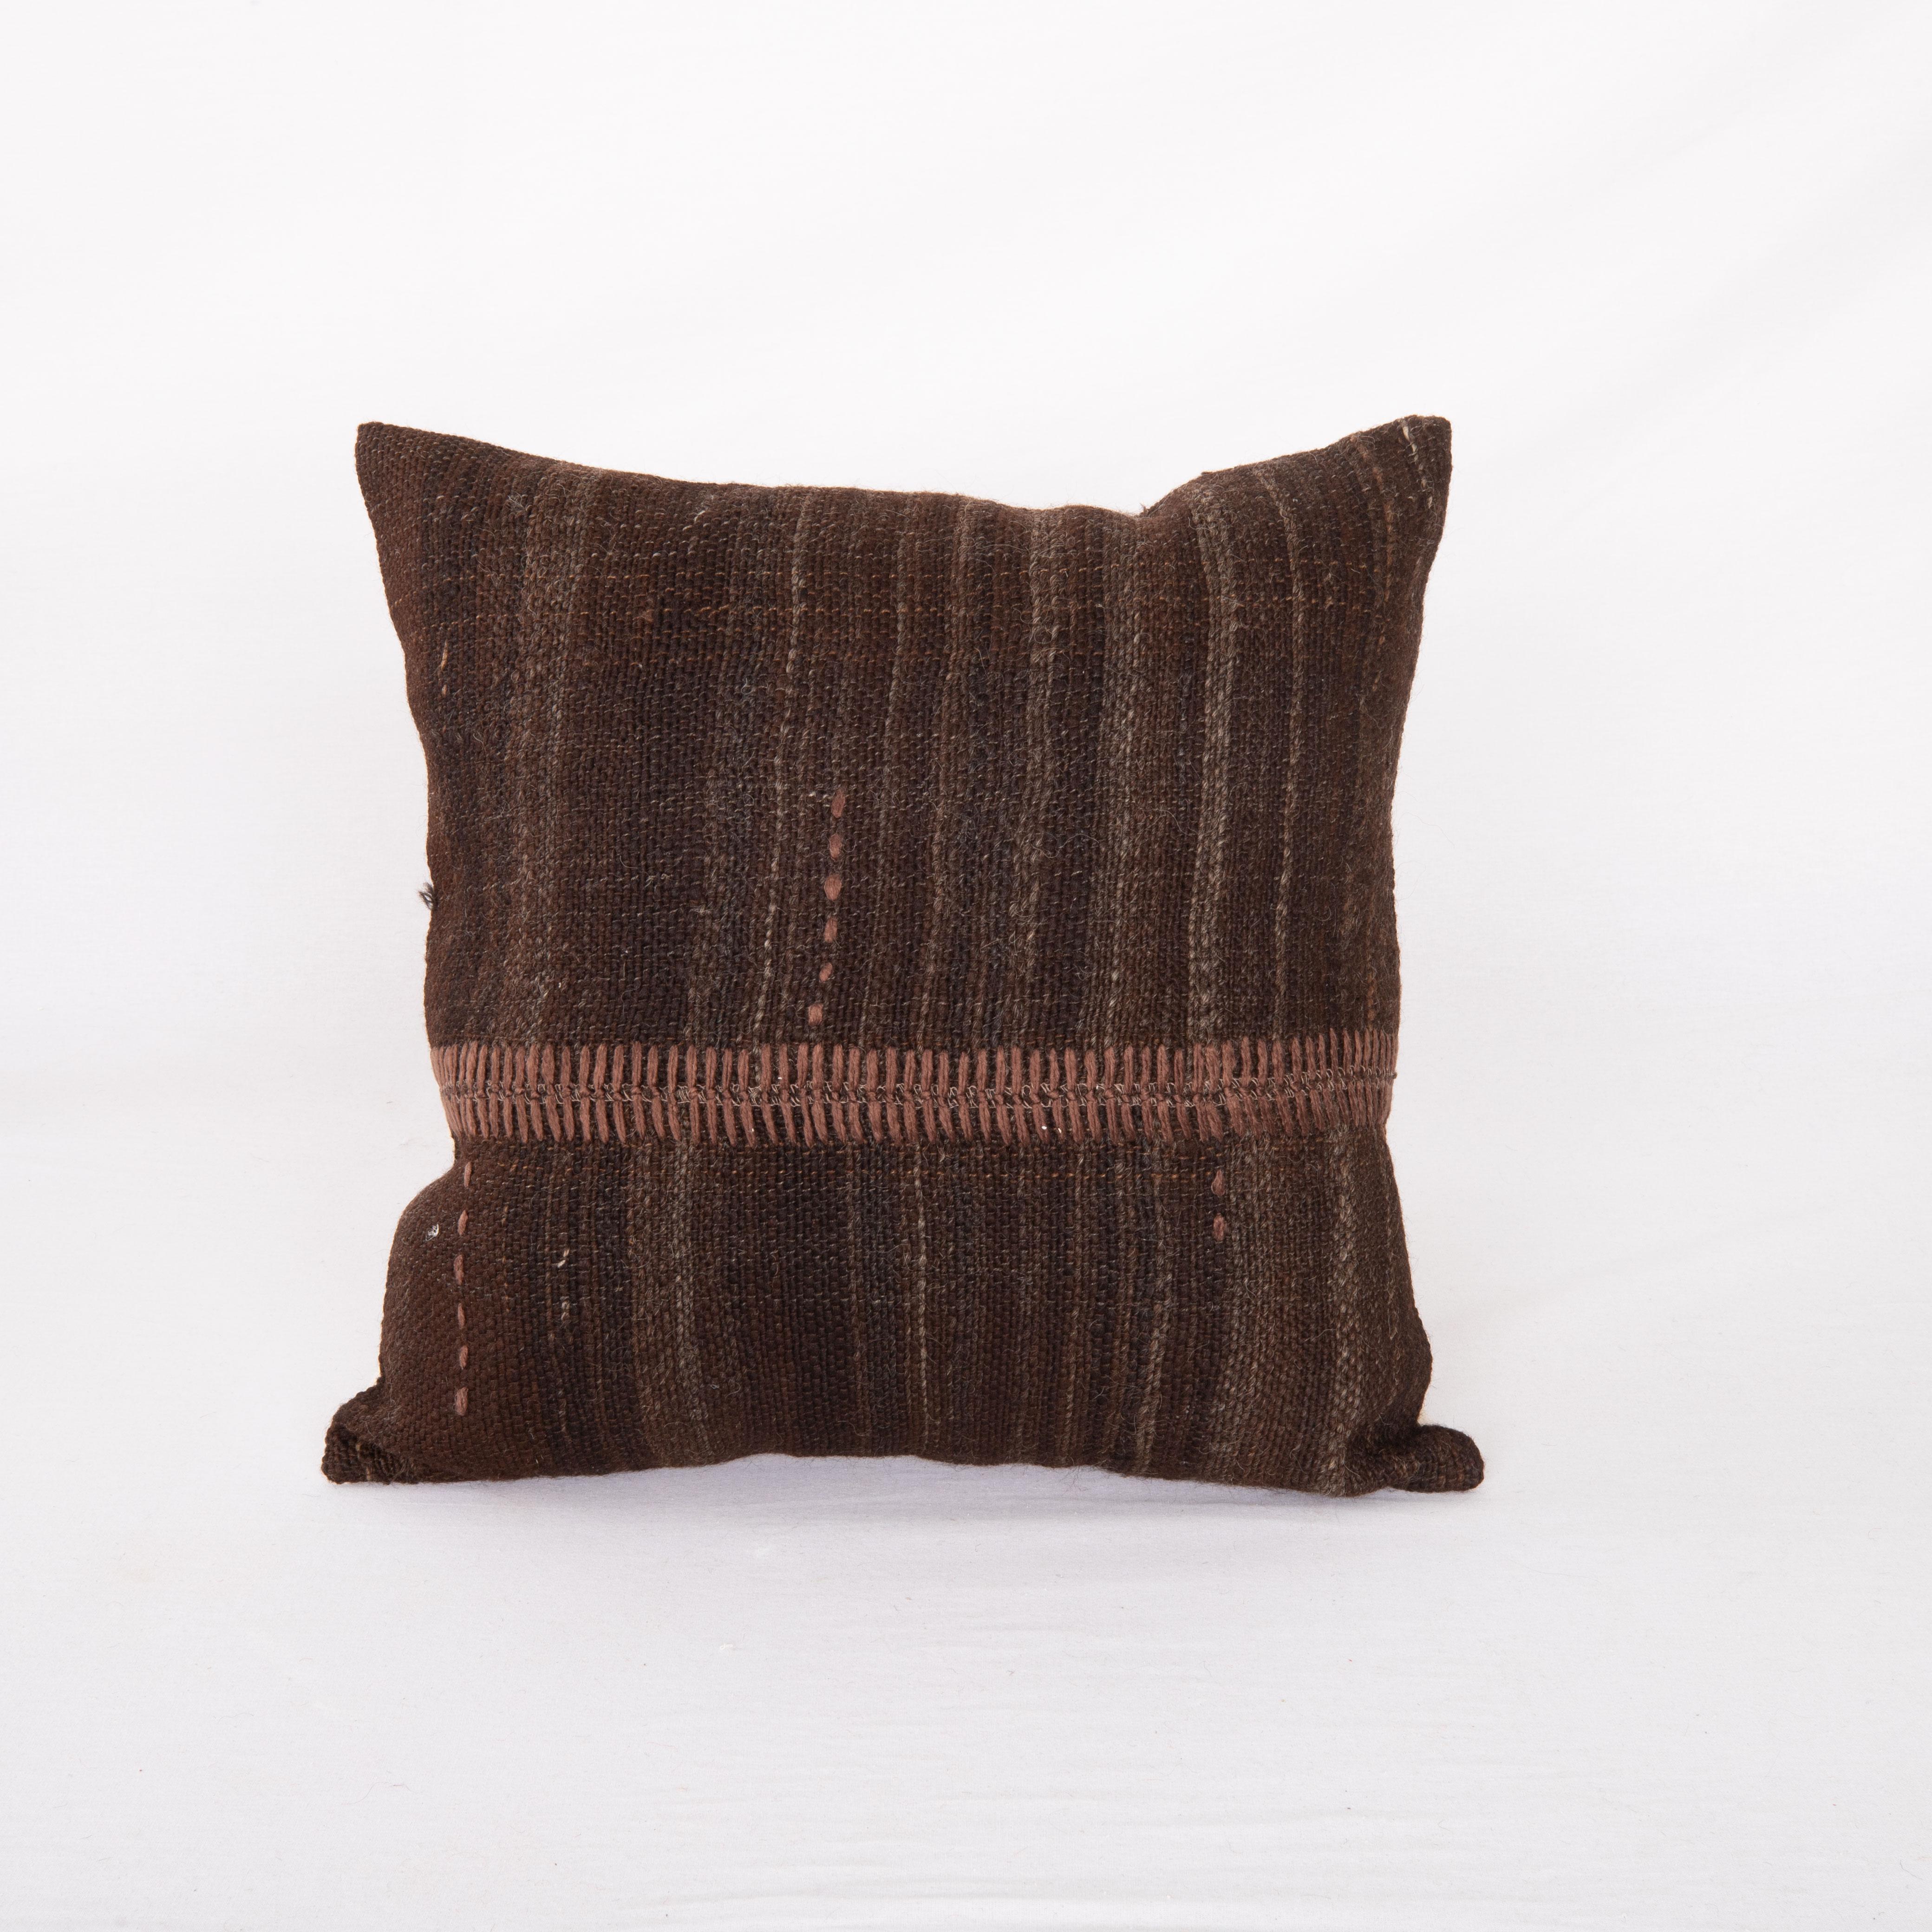 Taie d'oreiller rustique réalisée à partir d'une couverture en laine non teintée vintage, Mid 20th C.


Ce coussin est fabriqué à partir d'une couverture vintage tissée à la main avec de la laine non teintée. Notre ajout à la pièce est une couture